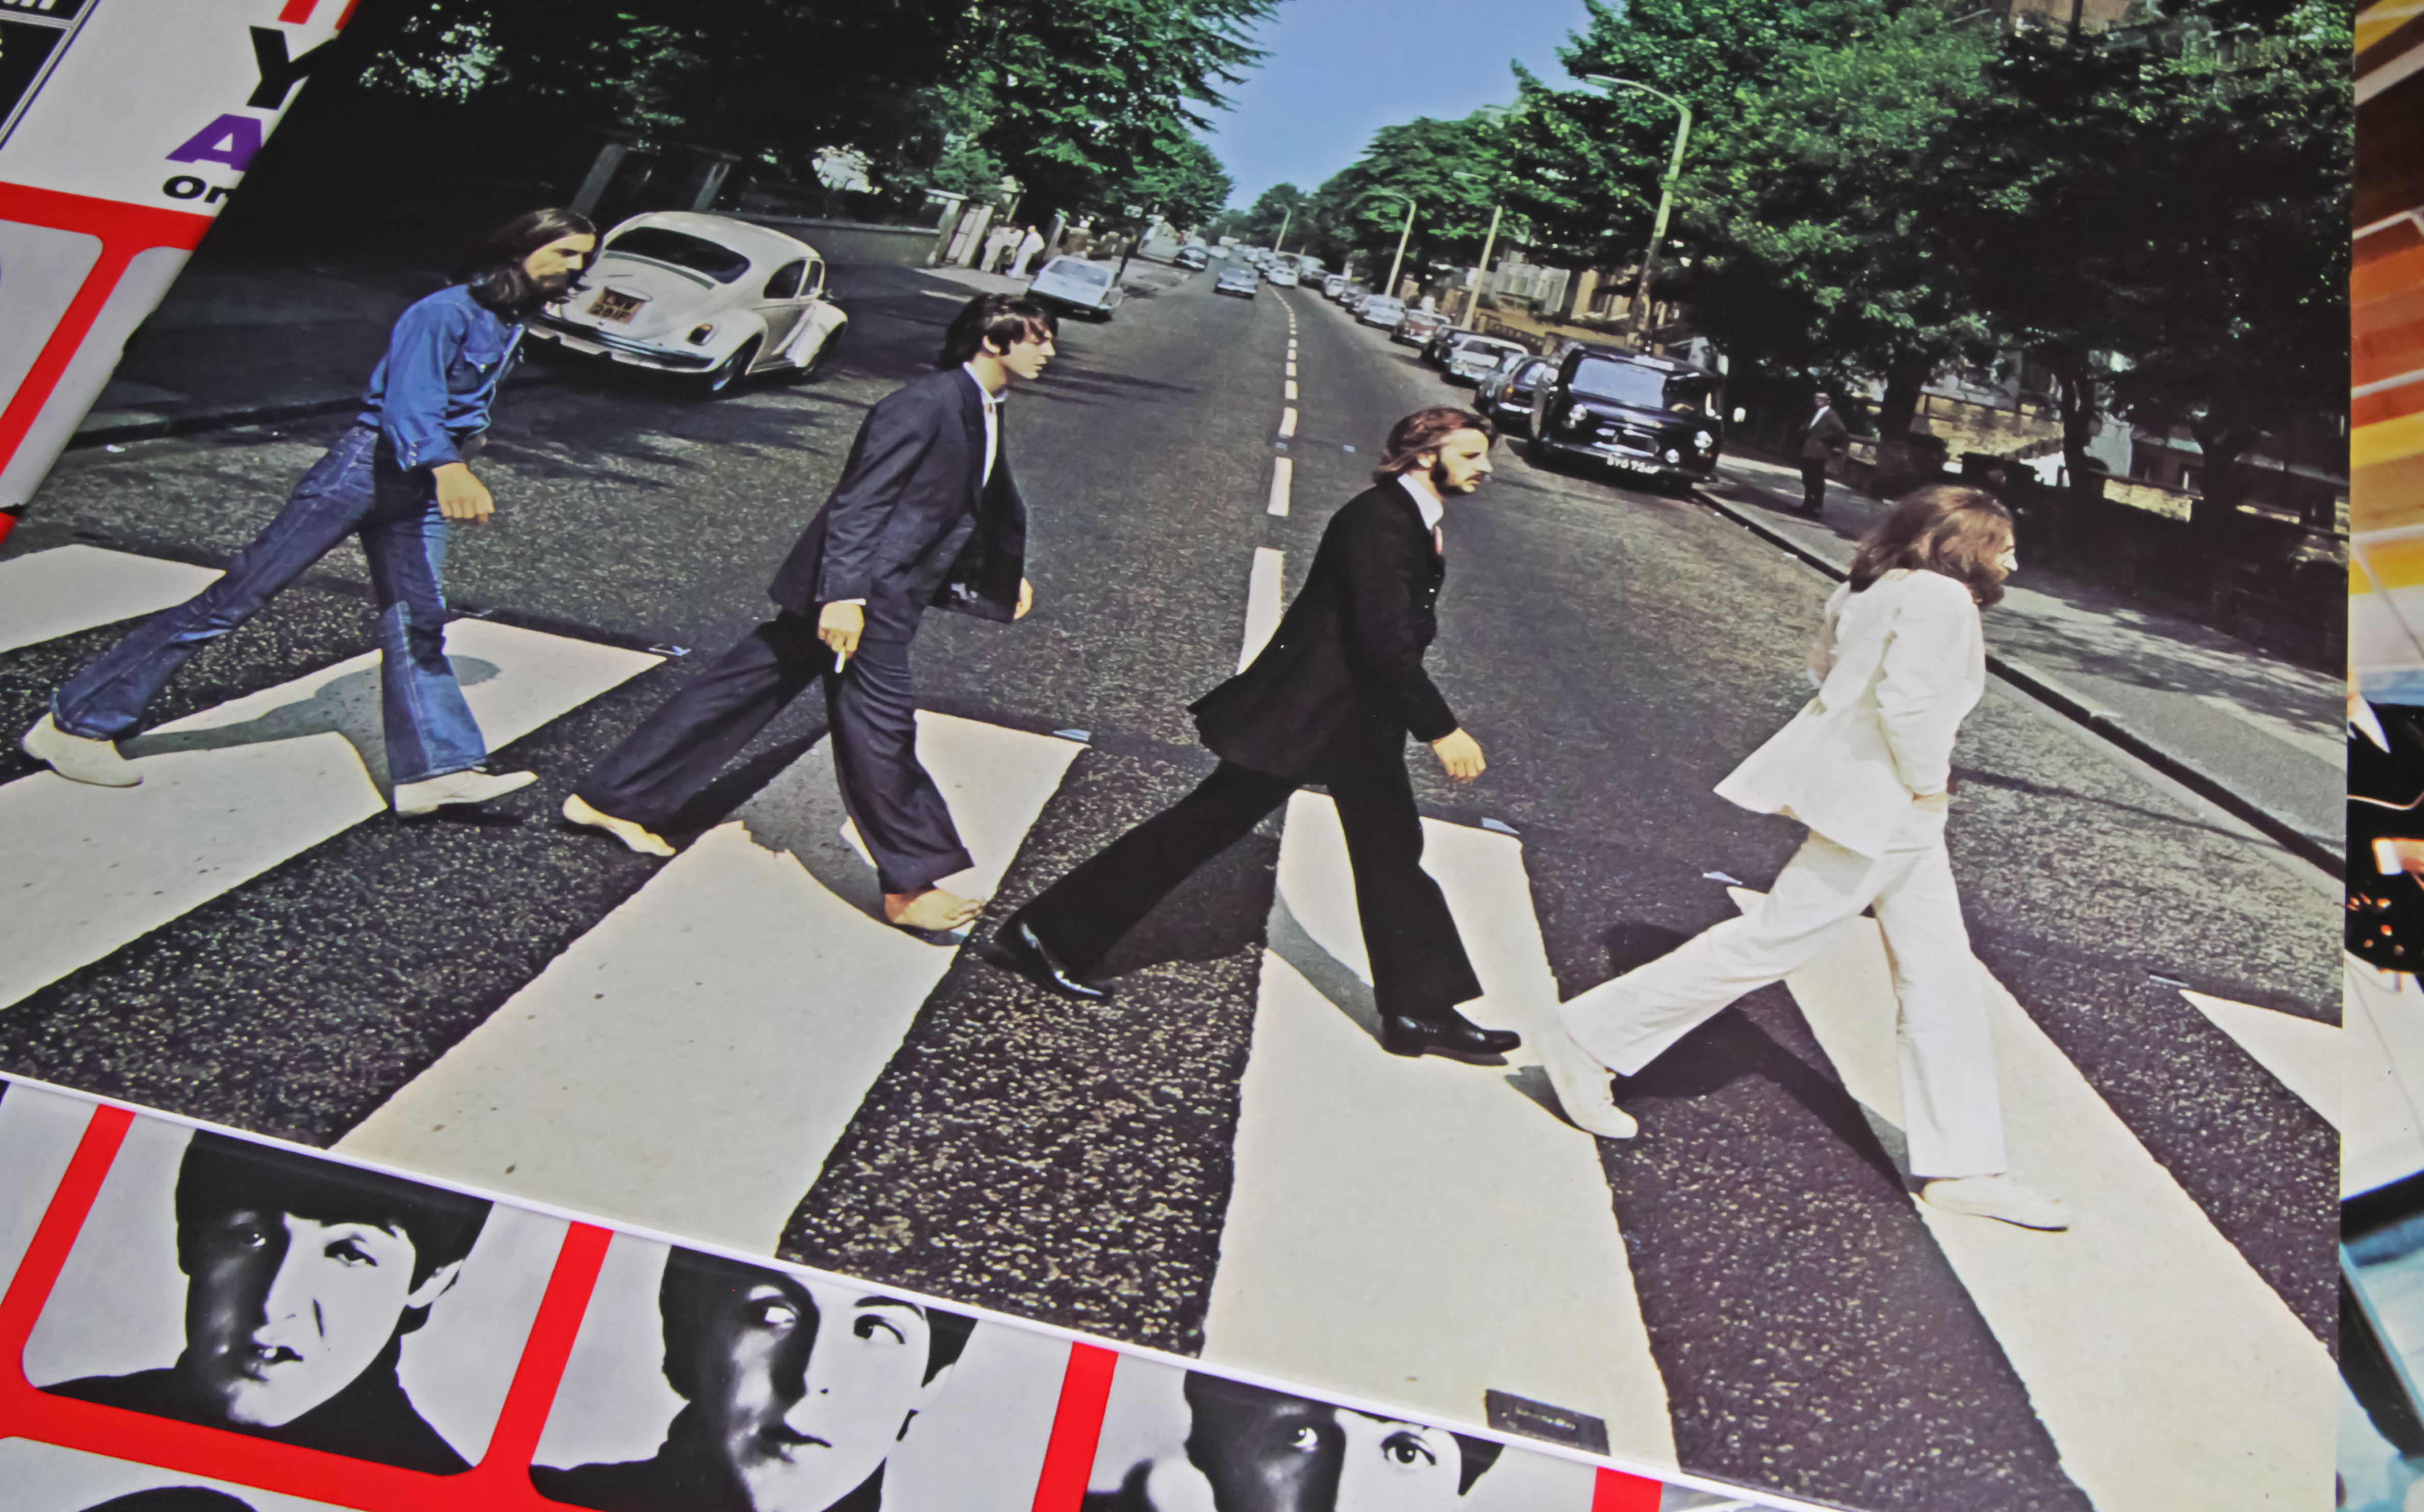 The Beatles Album cover